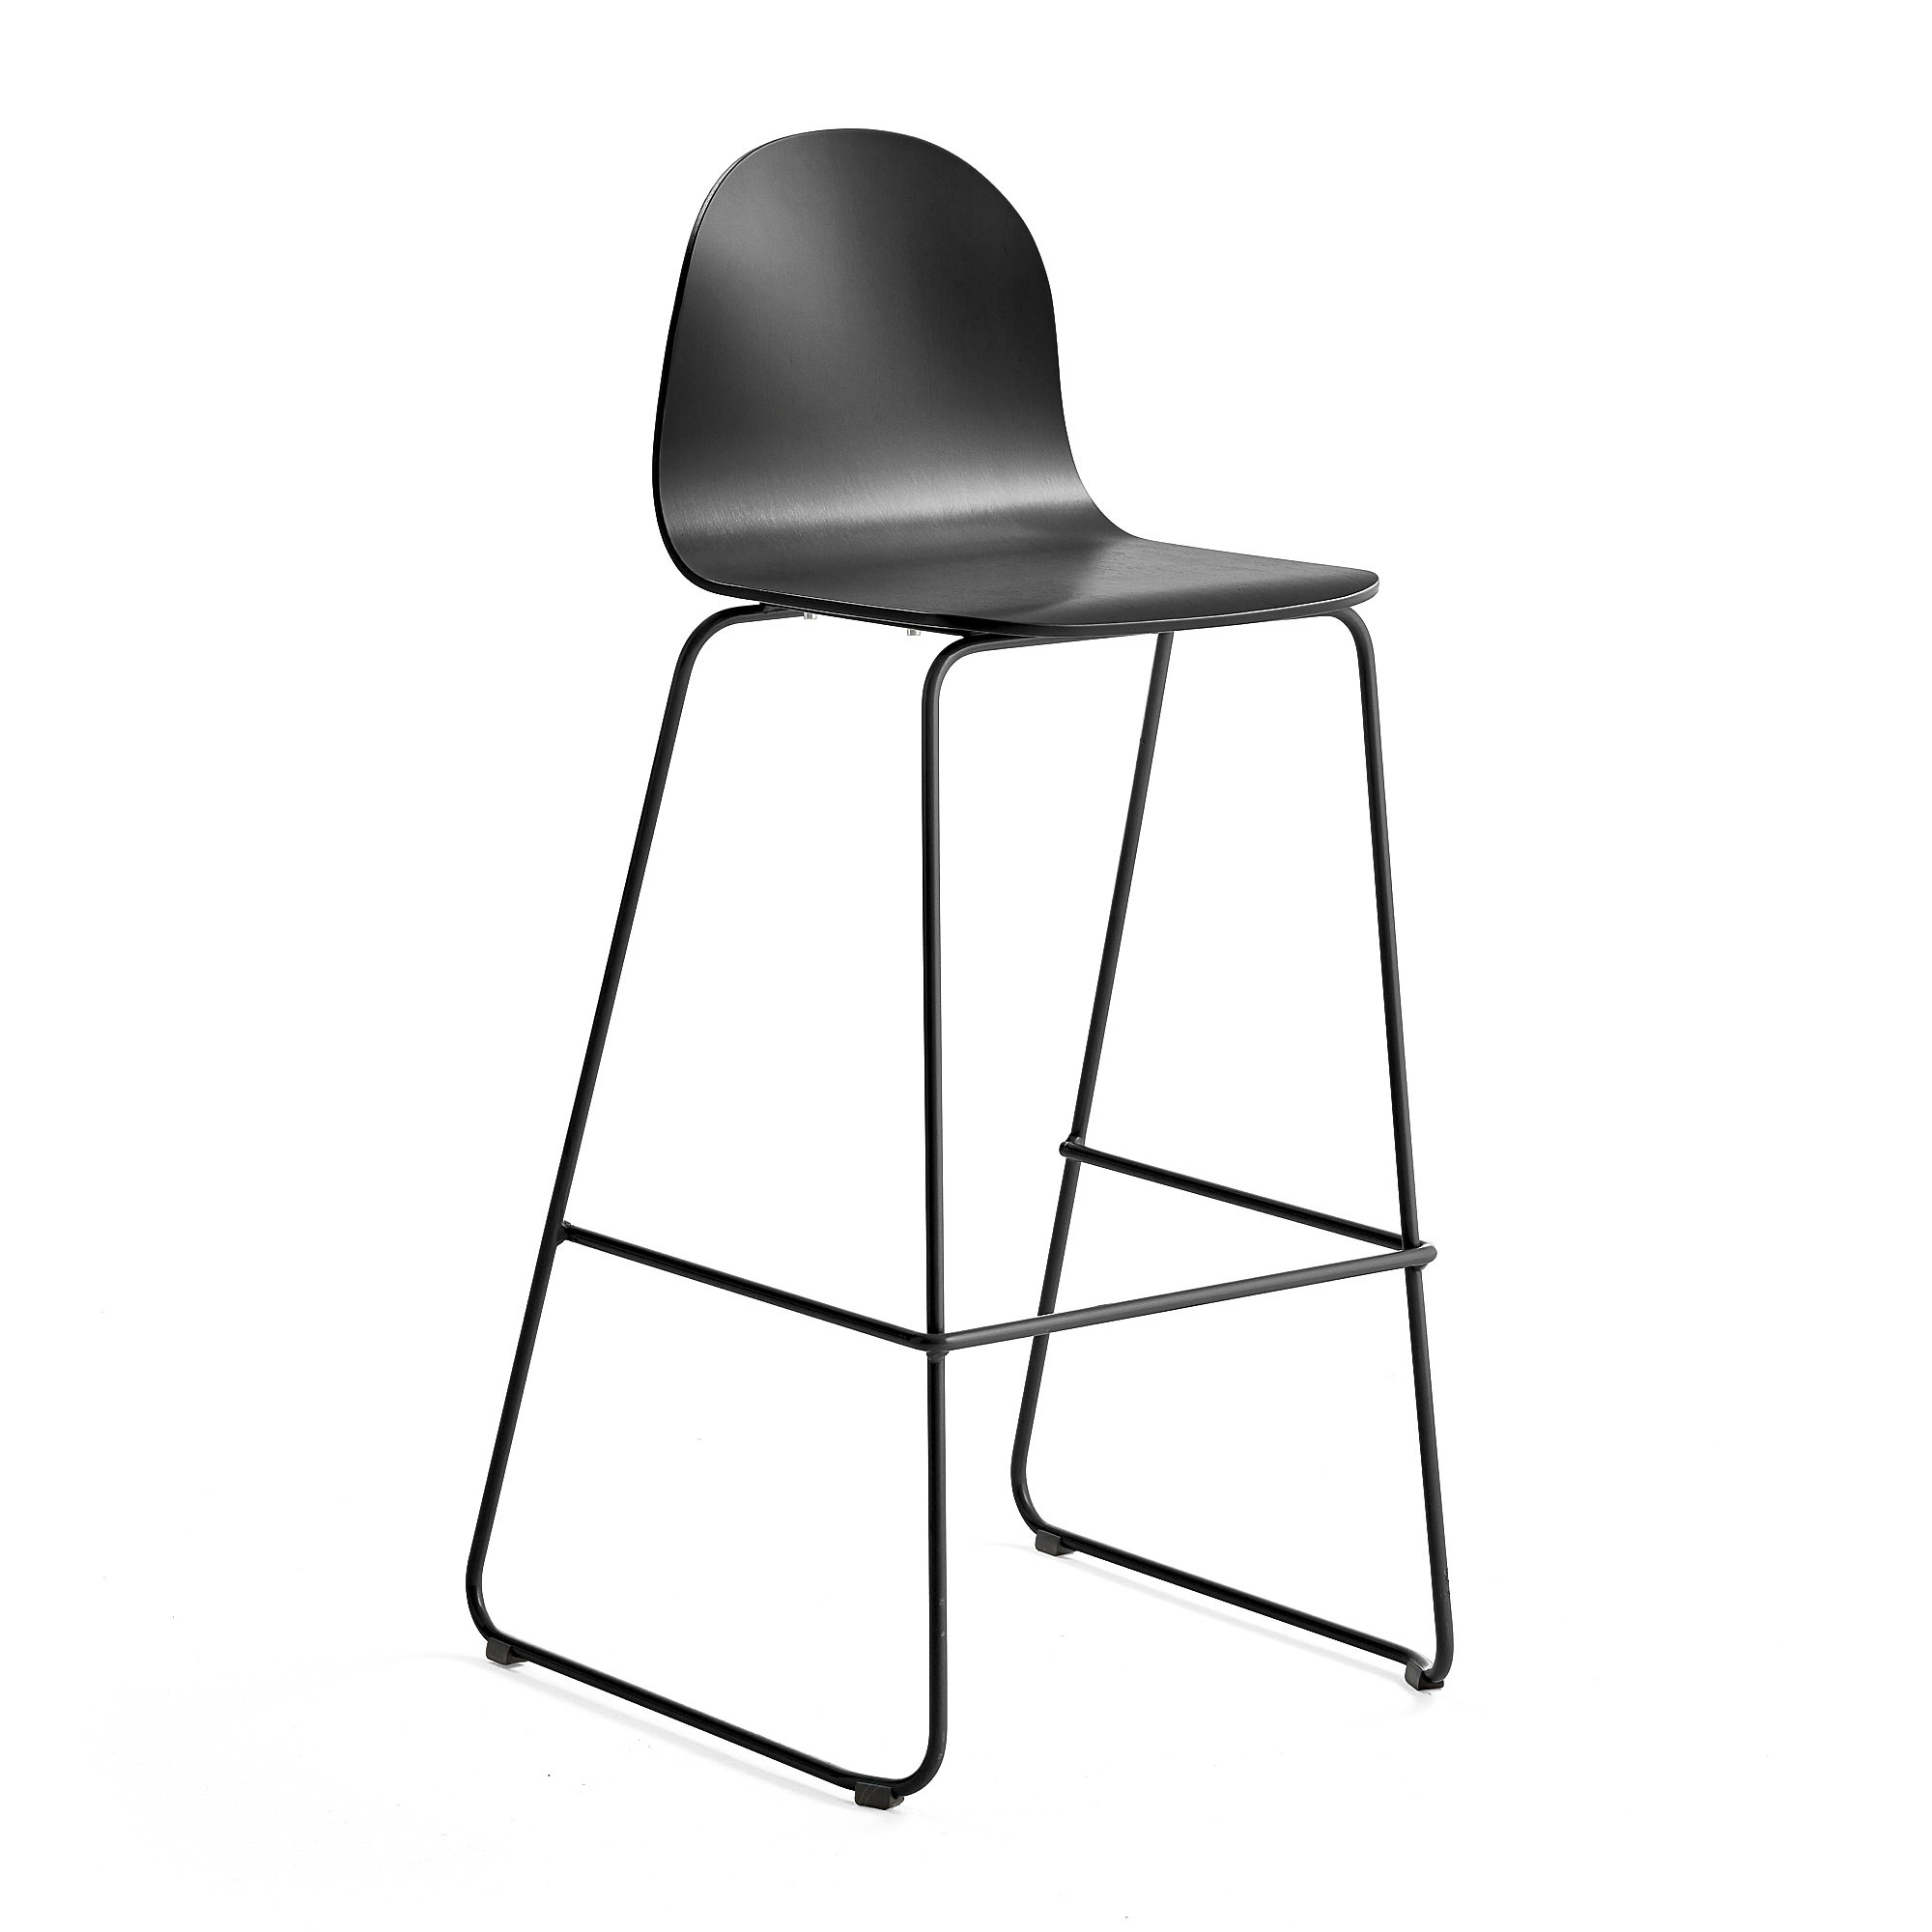 Barová židle GANDER, výška sedáku 790 mm, lakovaná skořepina, černá